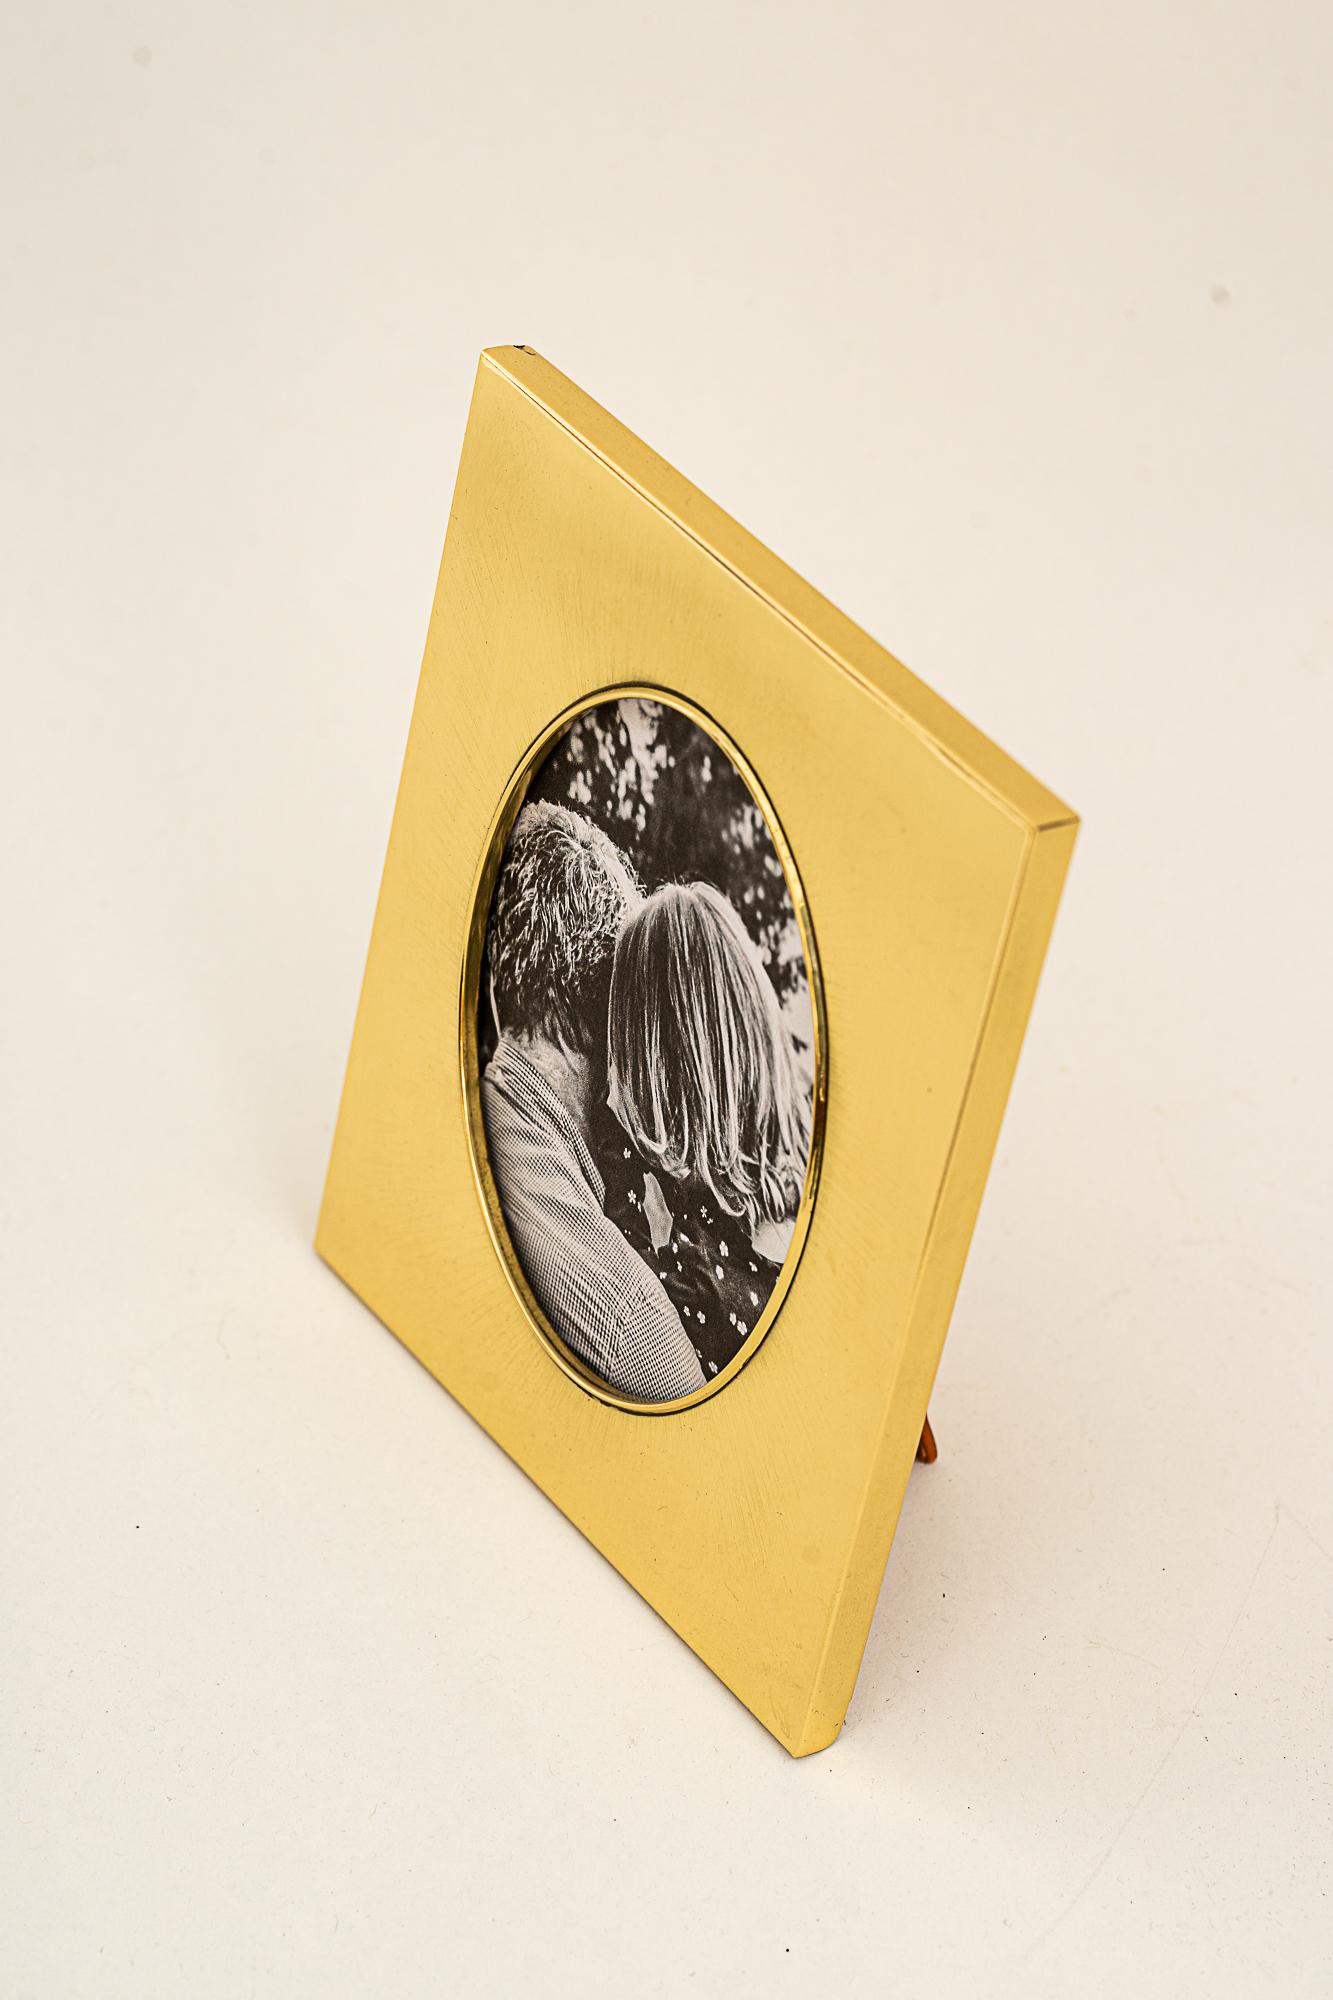 Cadre photo Art Déco en laiton vers 1920
Laiton poli et poêle émaillé
L'image est uniquement destinée à la prise de vue (non incluse)
Taille maximale de l'image : 
Largeur 12,5cm 
Hauteur : 16cm
Taille de l'image visible à l'avant : 
Hauteur